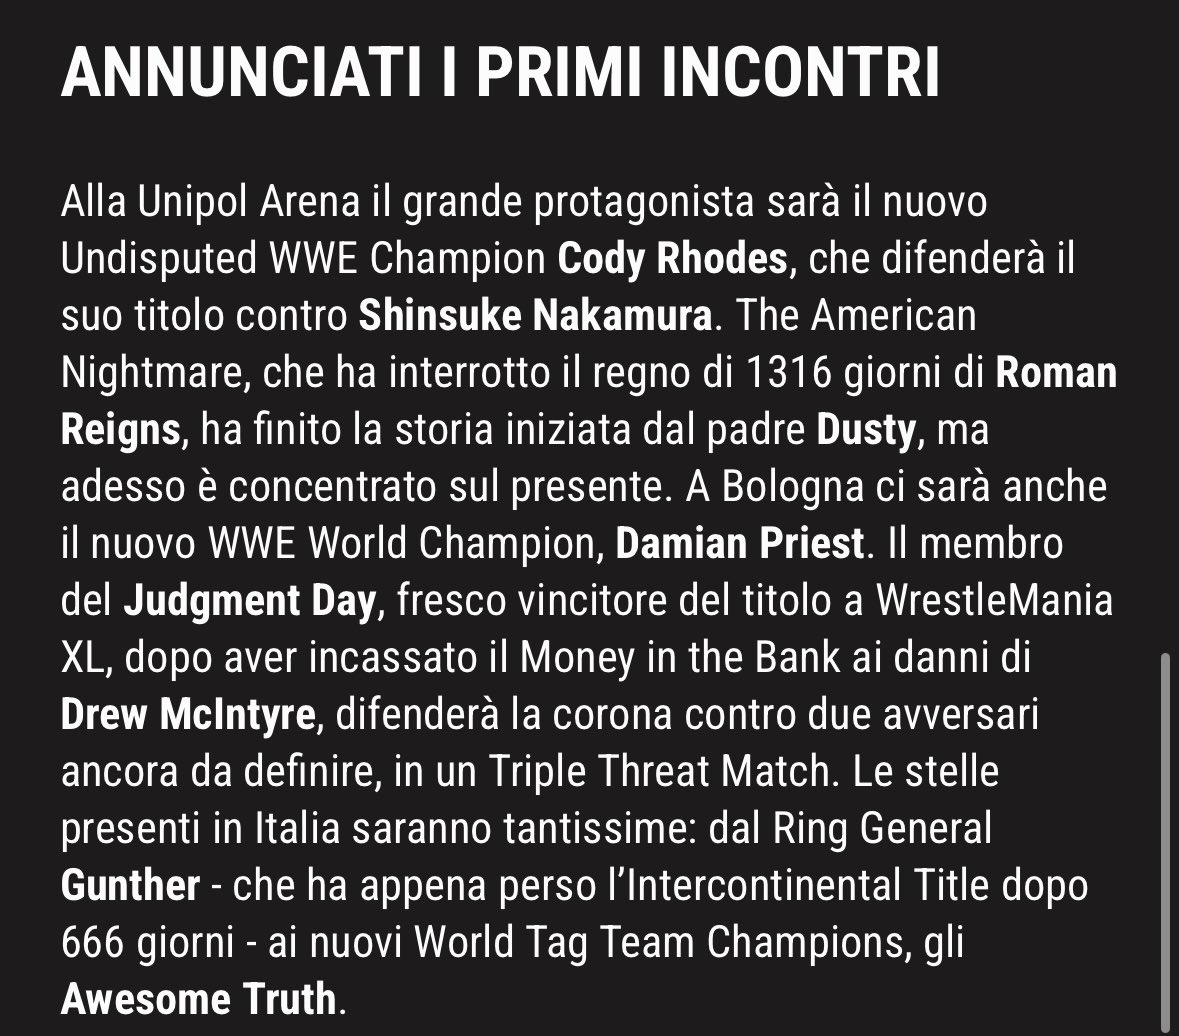 #NEWS #WWE Live Event Bologna 👇🏼